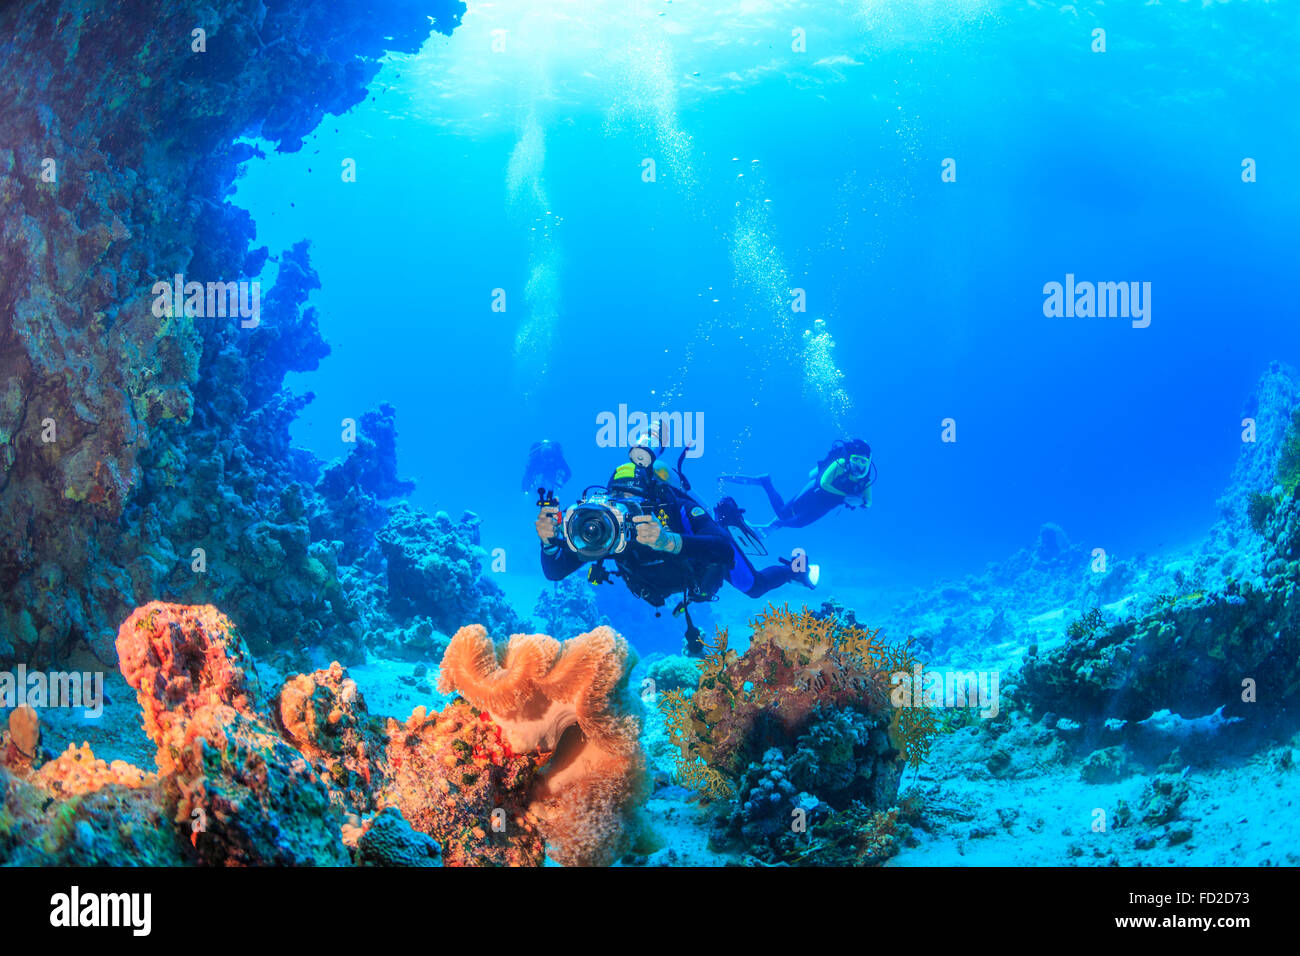 Aventure, aqua, bleu, corail, profondeur de plongée, plongeur, passe-temps, la vie, ocean, rouge, plongée, mer, sport, style, natation, sous l'eau, de l'eau Banque D'Images